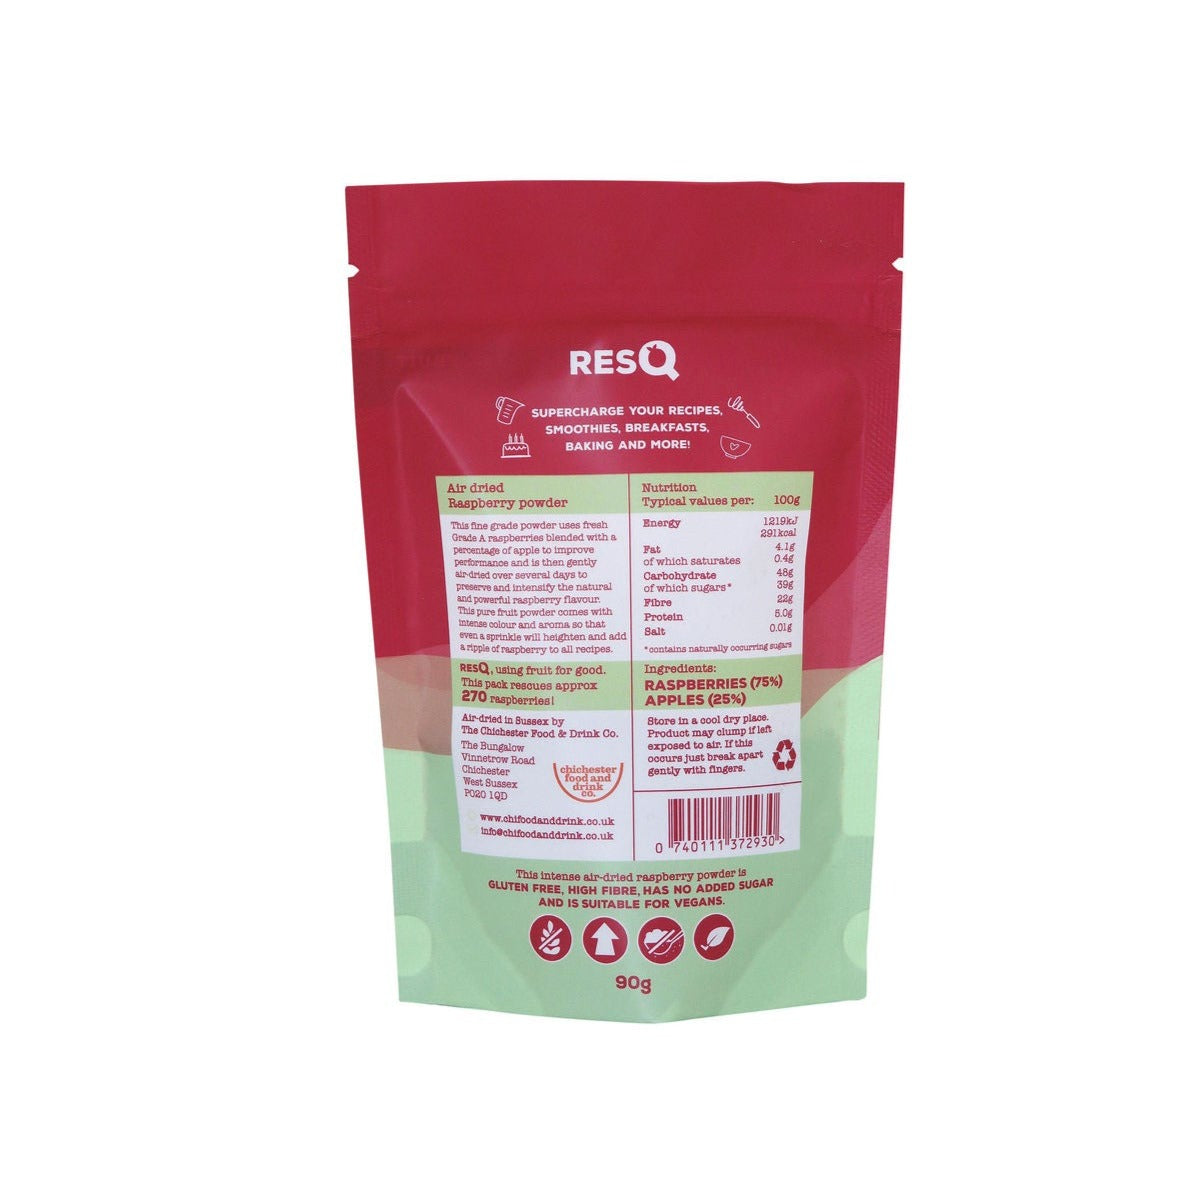 RESQ Raspberry Powder - 100% Air-Dried Raspberry 90g